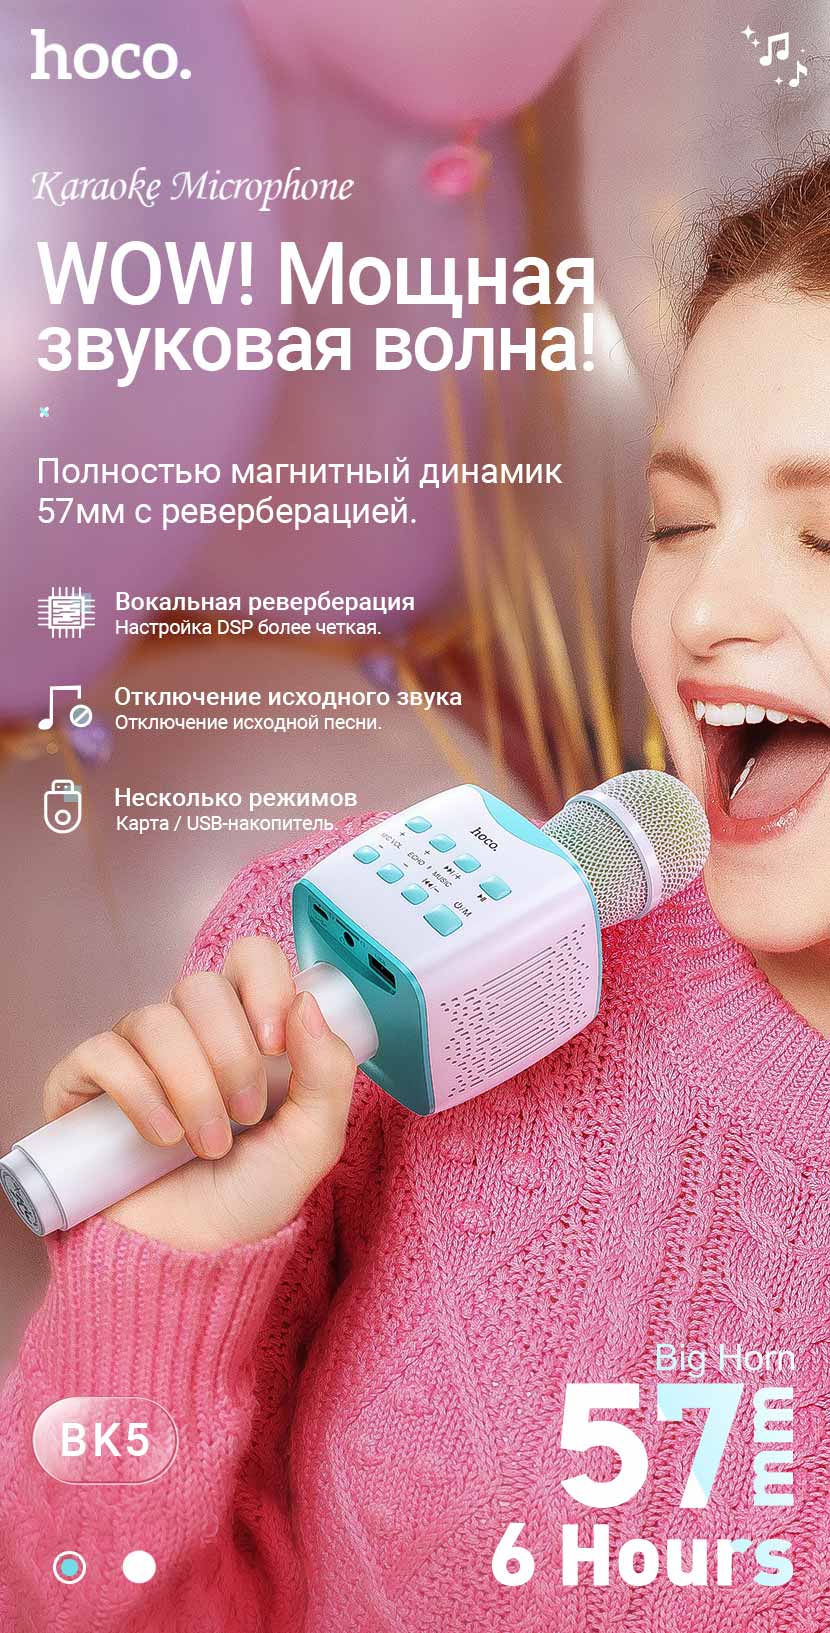 hoco news bk5 cantando karaoke microphone ru